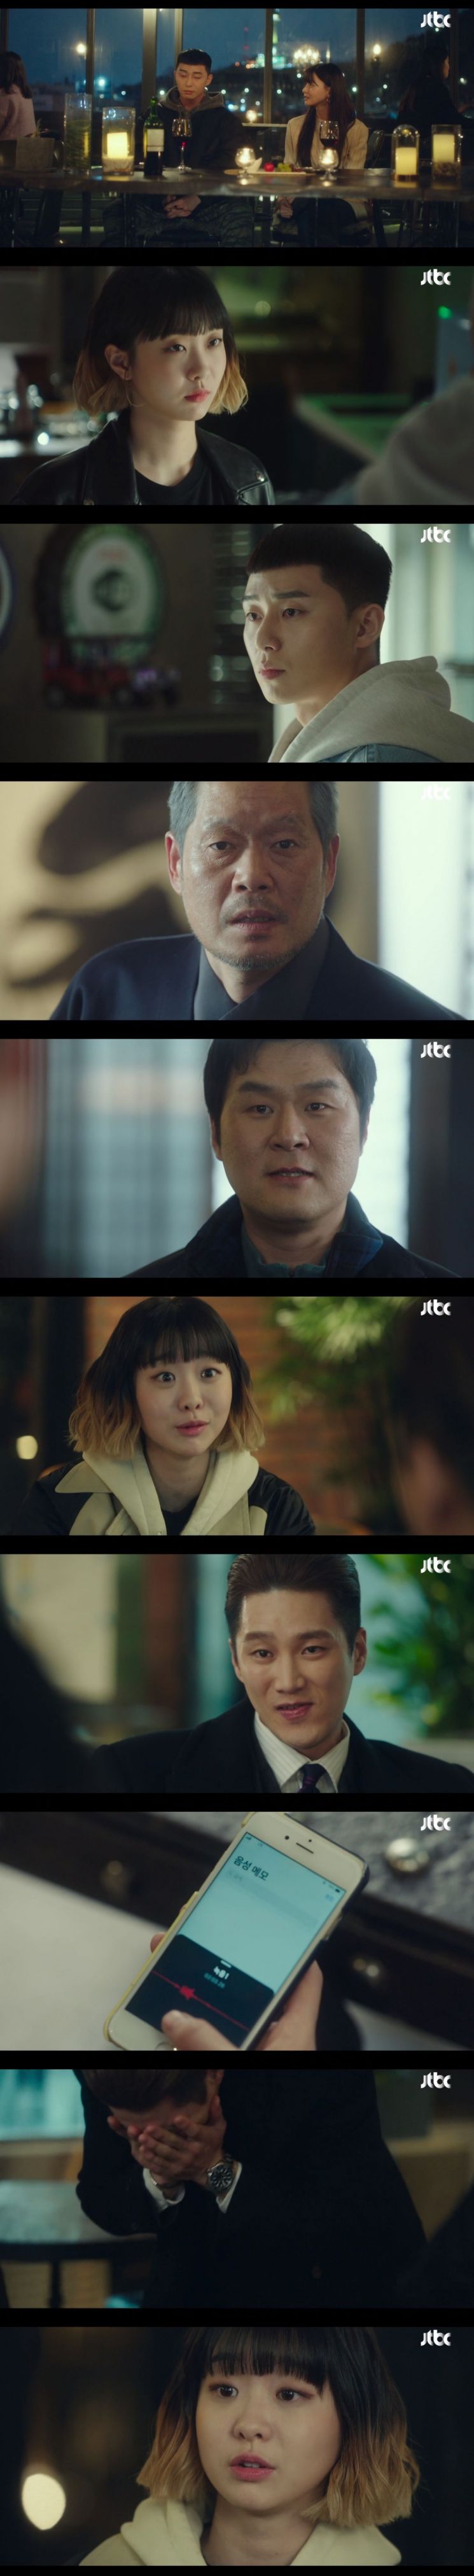 '이태원 클라쓰' 김다미, 영화 '마녀' 이어 연기 변신 성공 …시청률 1위